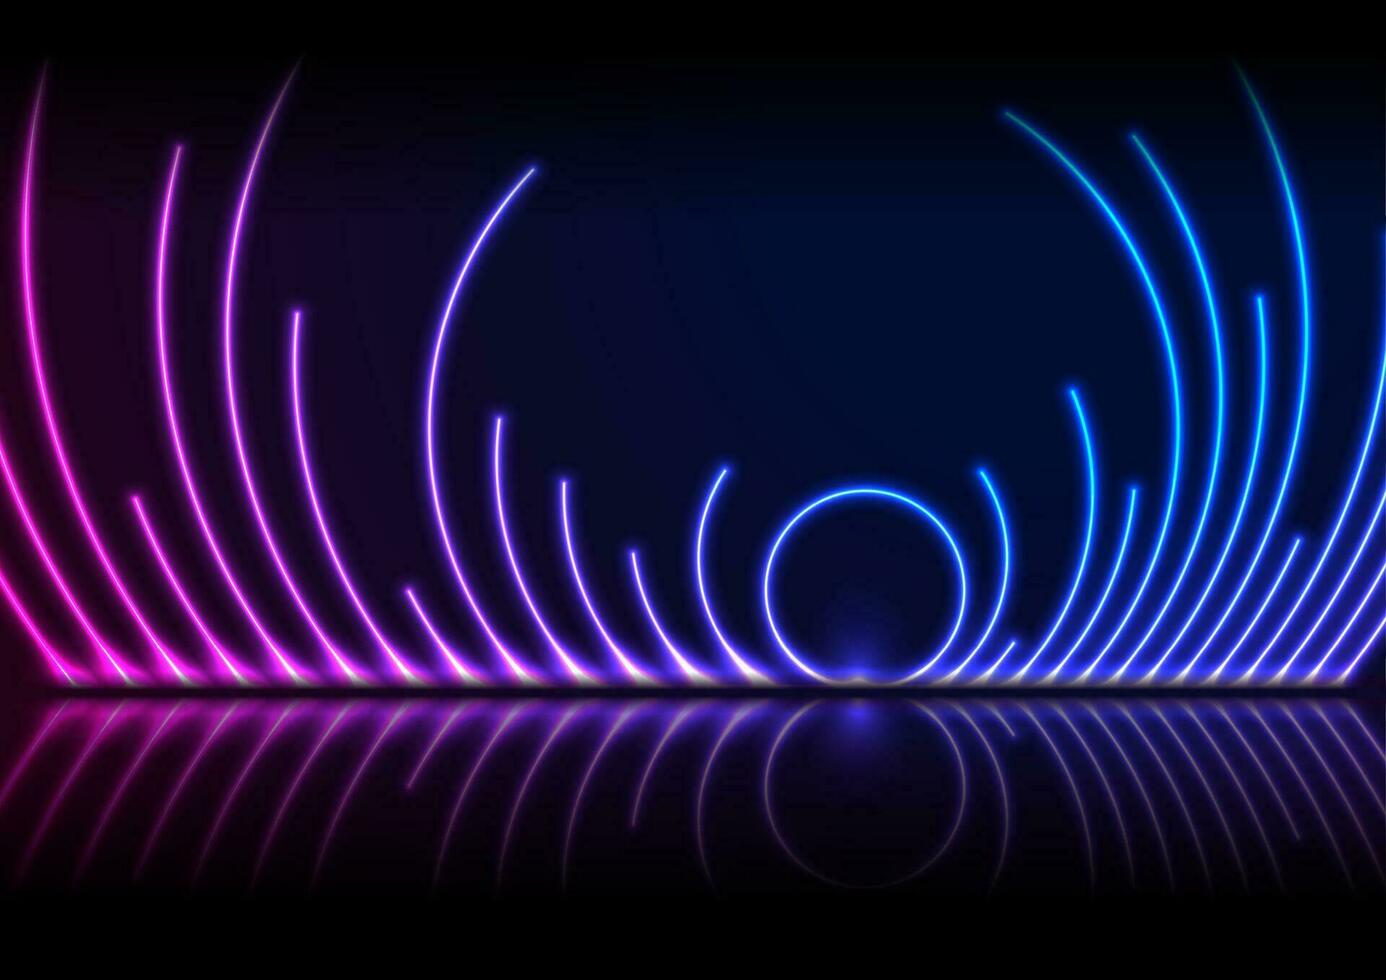 bleu ultra-violet néon laser cercles La technologie Contexte vecteur